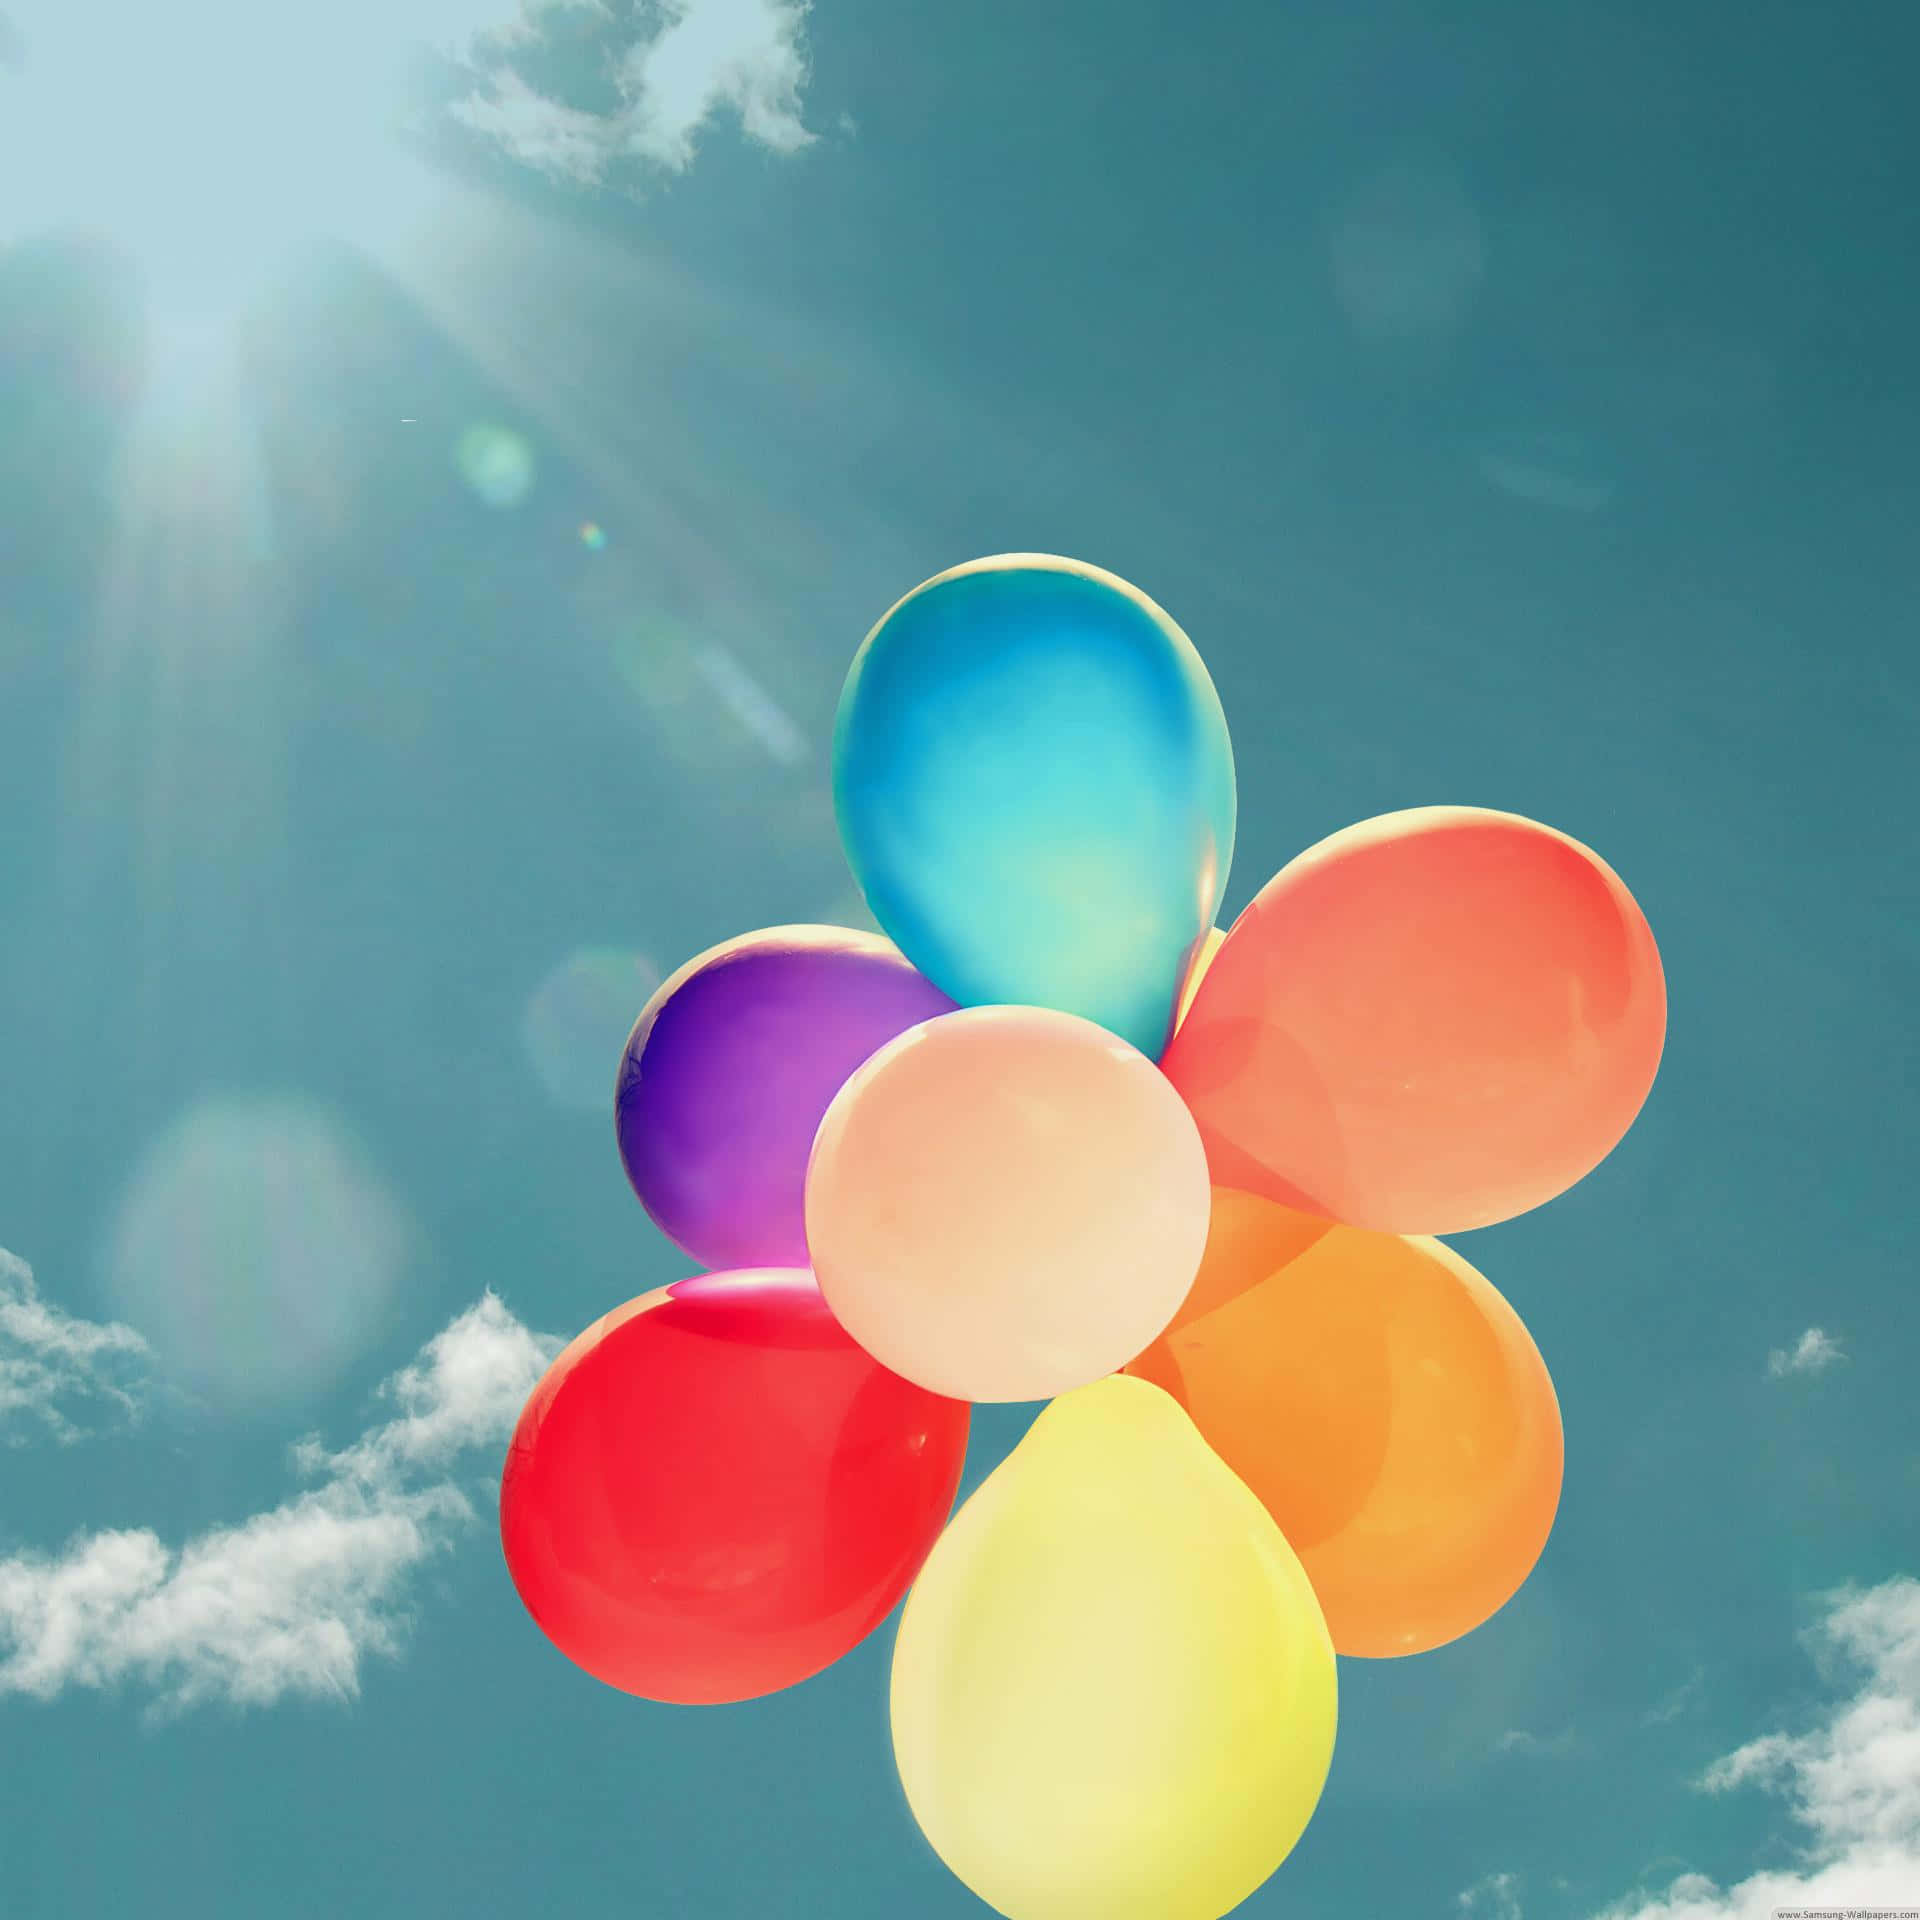 Farverigeballoner Fylder Sommerhimlen!